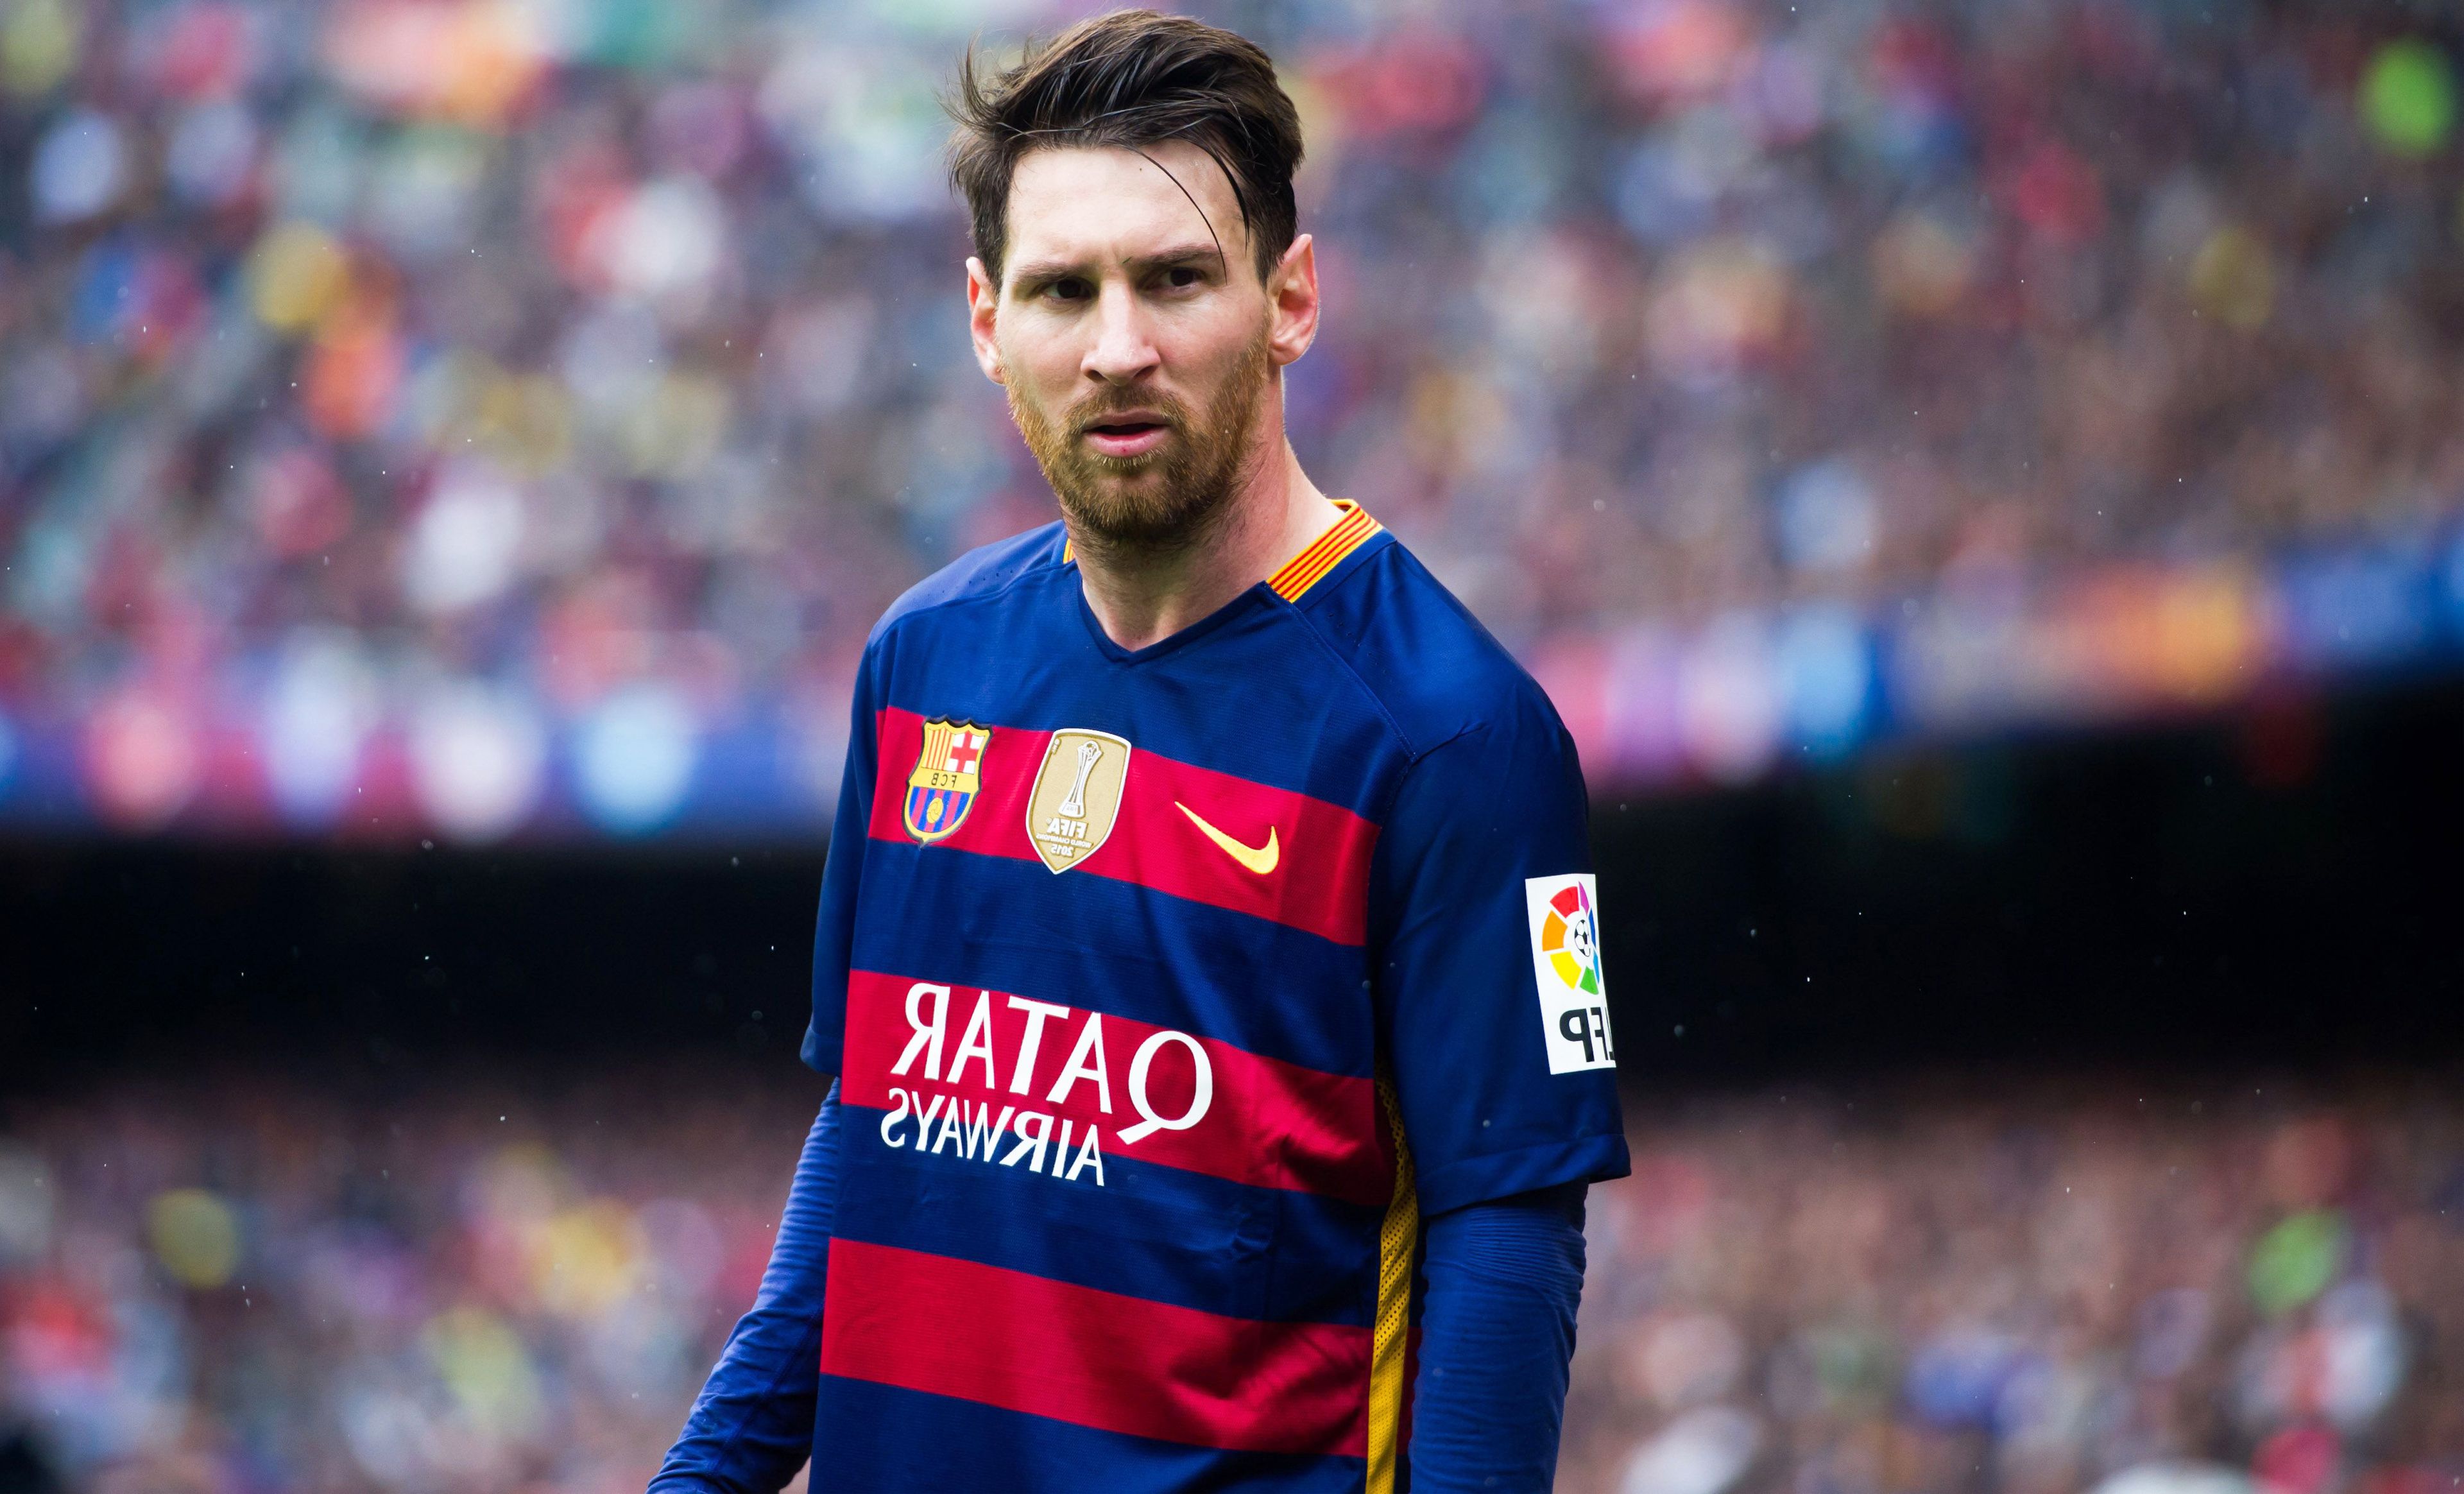 Đón xem bộ sưu tập ảnh Messi 4K để khám phá những khoảnh khắc đáng nhớ, tuyệt đẹp của anh chàng này trên sân cỏ.